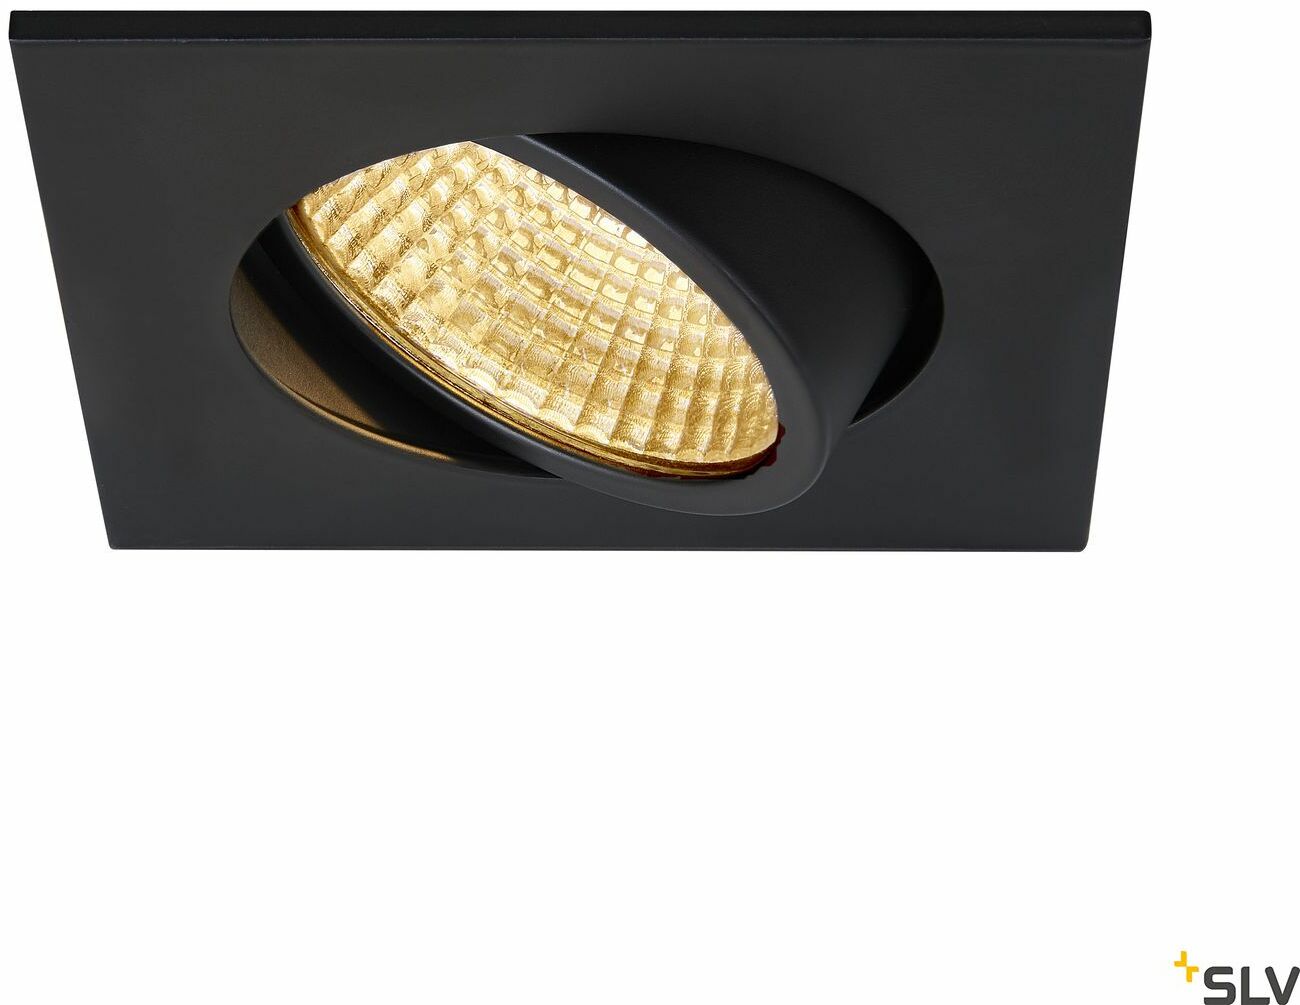 NEW TRIA 68 I CS lampa sufitowa wpuszczana LED,, kolor czarny, kwadratowa, 2700K, 38 , z zasilaczem i sprężynami zaciskowymi